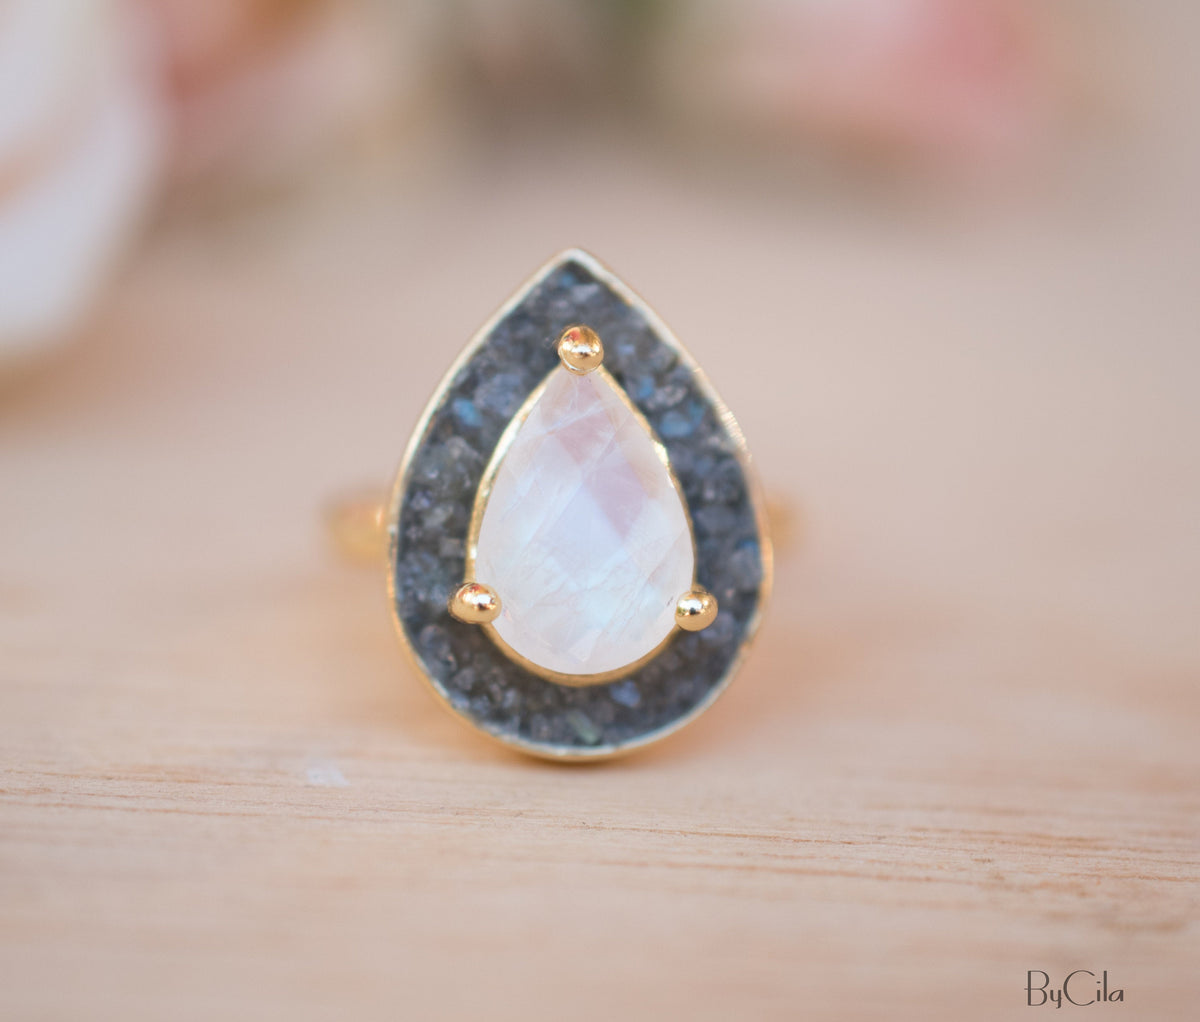 Mosaic Labradorite & Moonstone Ring *18k Gold Plated Ring * Statement Ring *Gemstone Ring *Bridal Ring *Organic Ring *Natural * BJR173